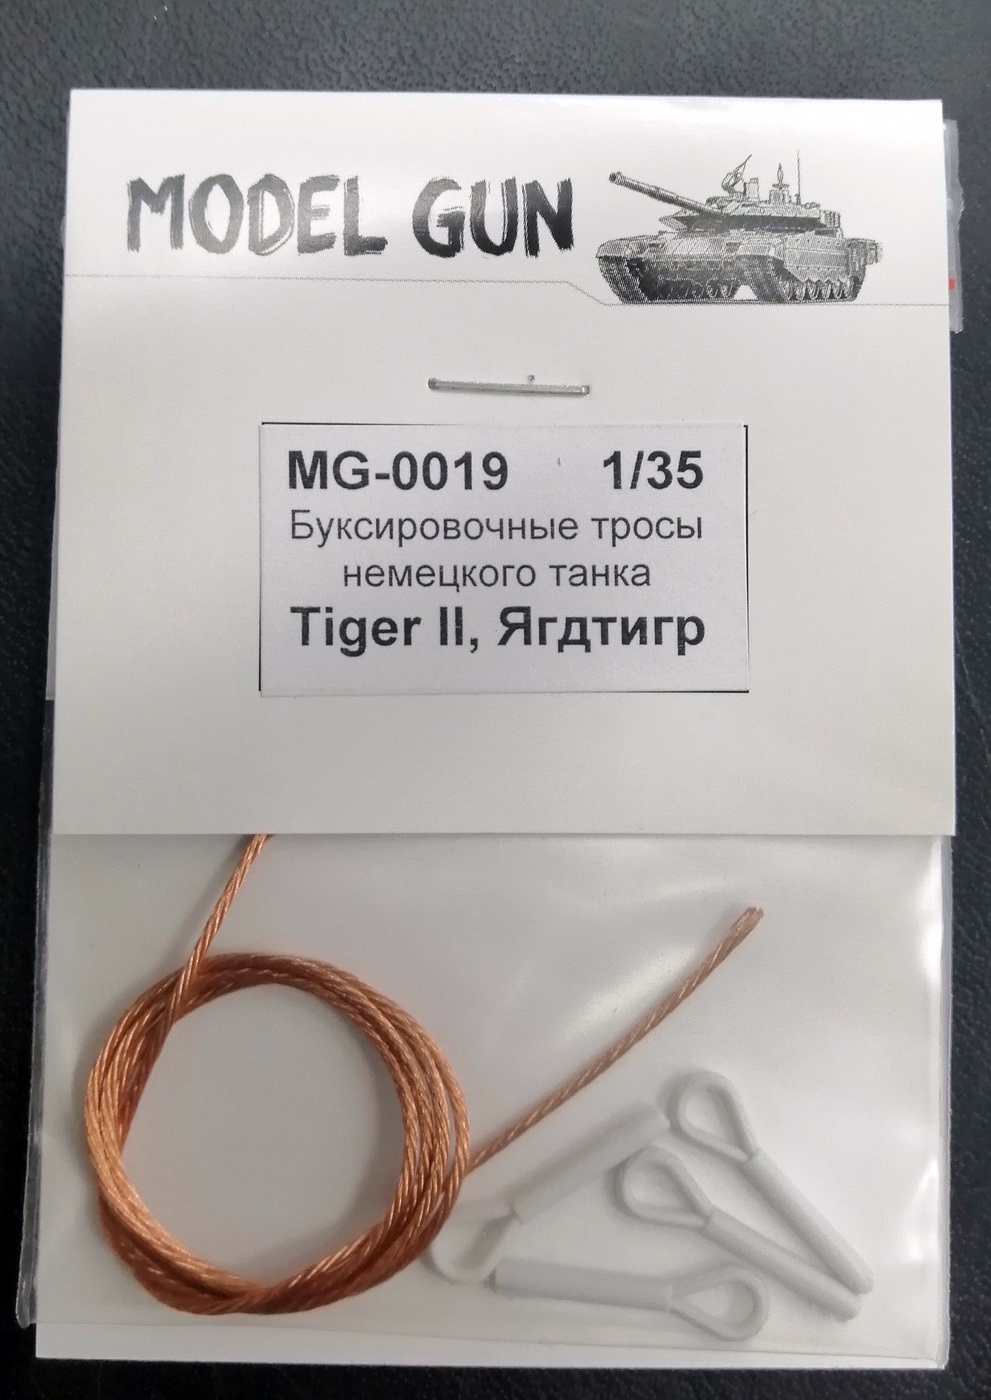 MG-0019  дополнения из металла  Буксировочные тросы "Королевский тигр", "Ягдтигр"  (1:35)